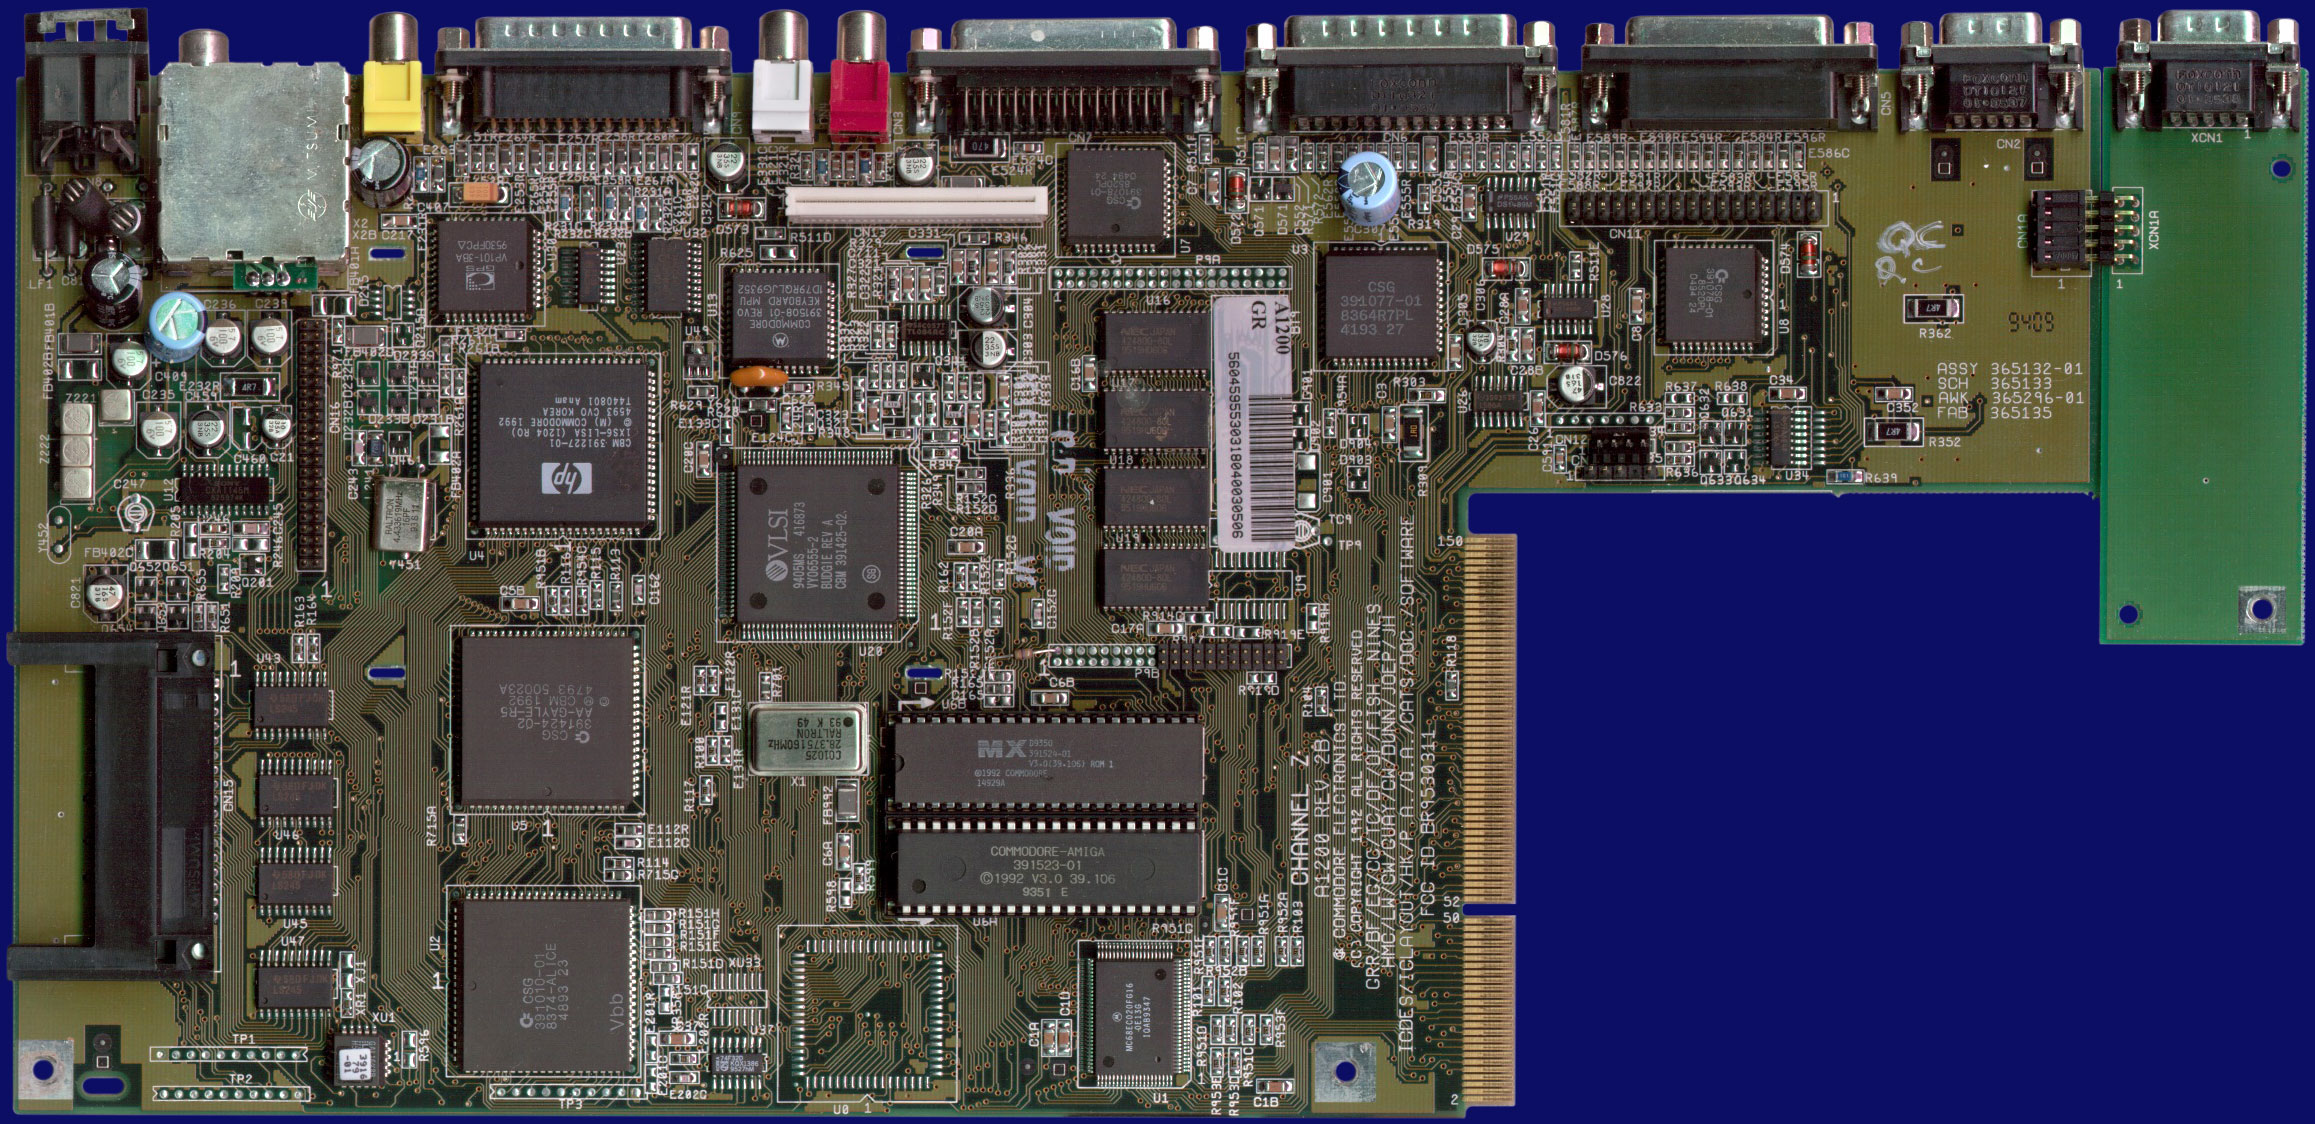 Commodore Amiga 1200 - Rev 2B, front side